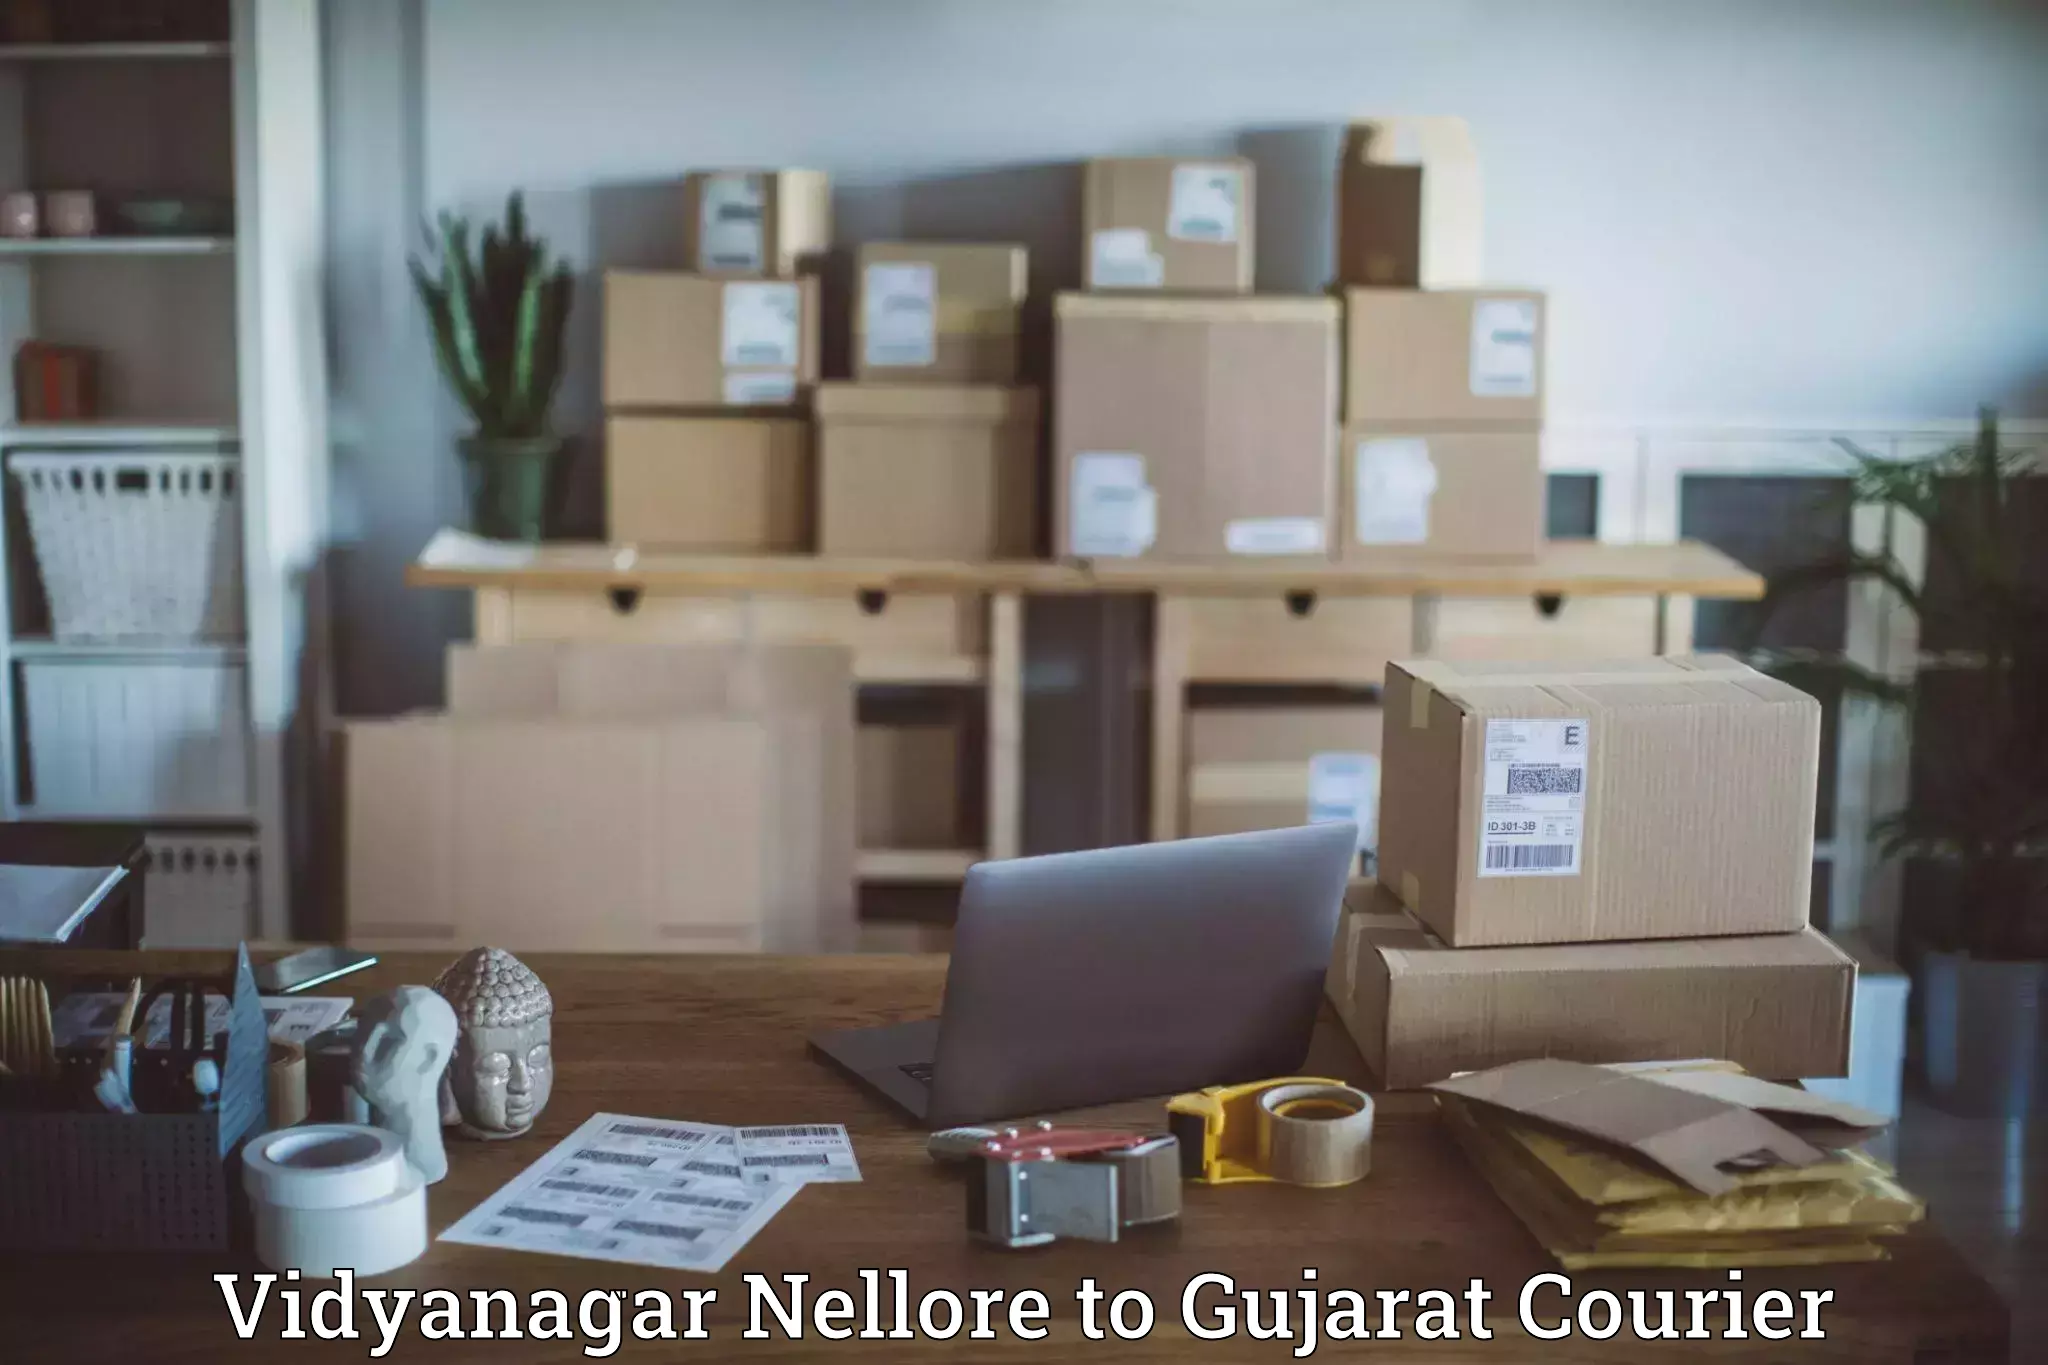 Reliable courier service Vidyanagar Nellore to Himmatnagar